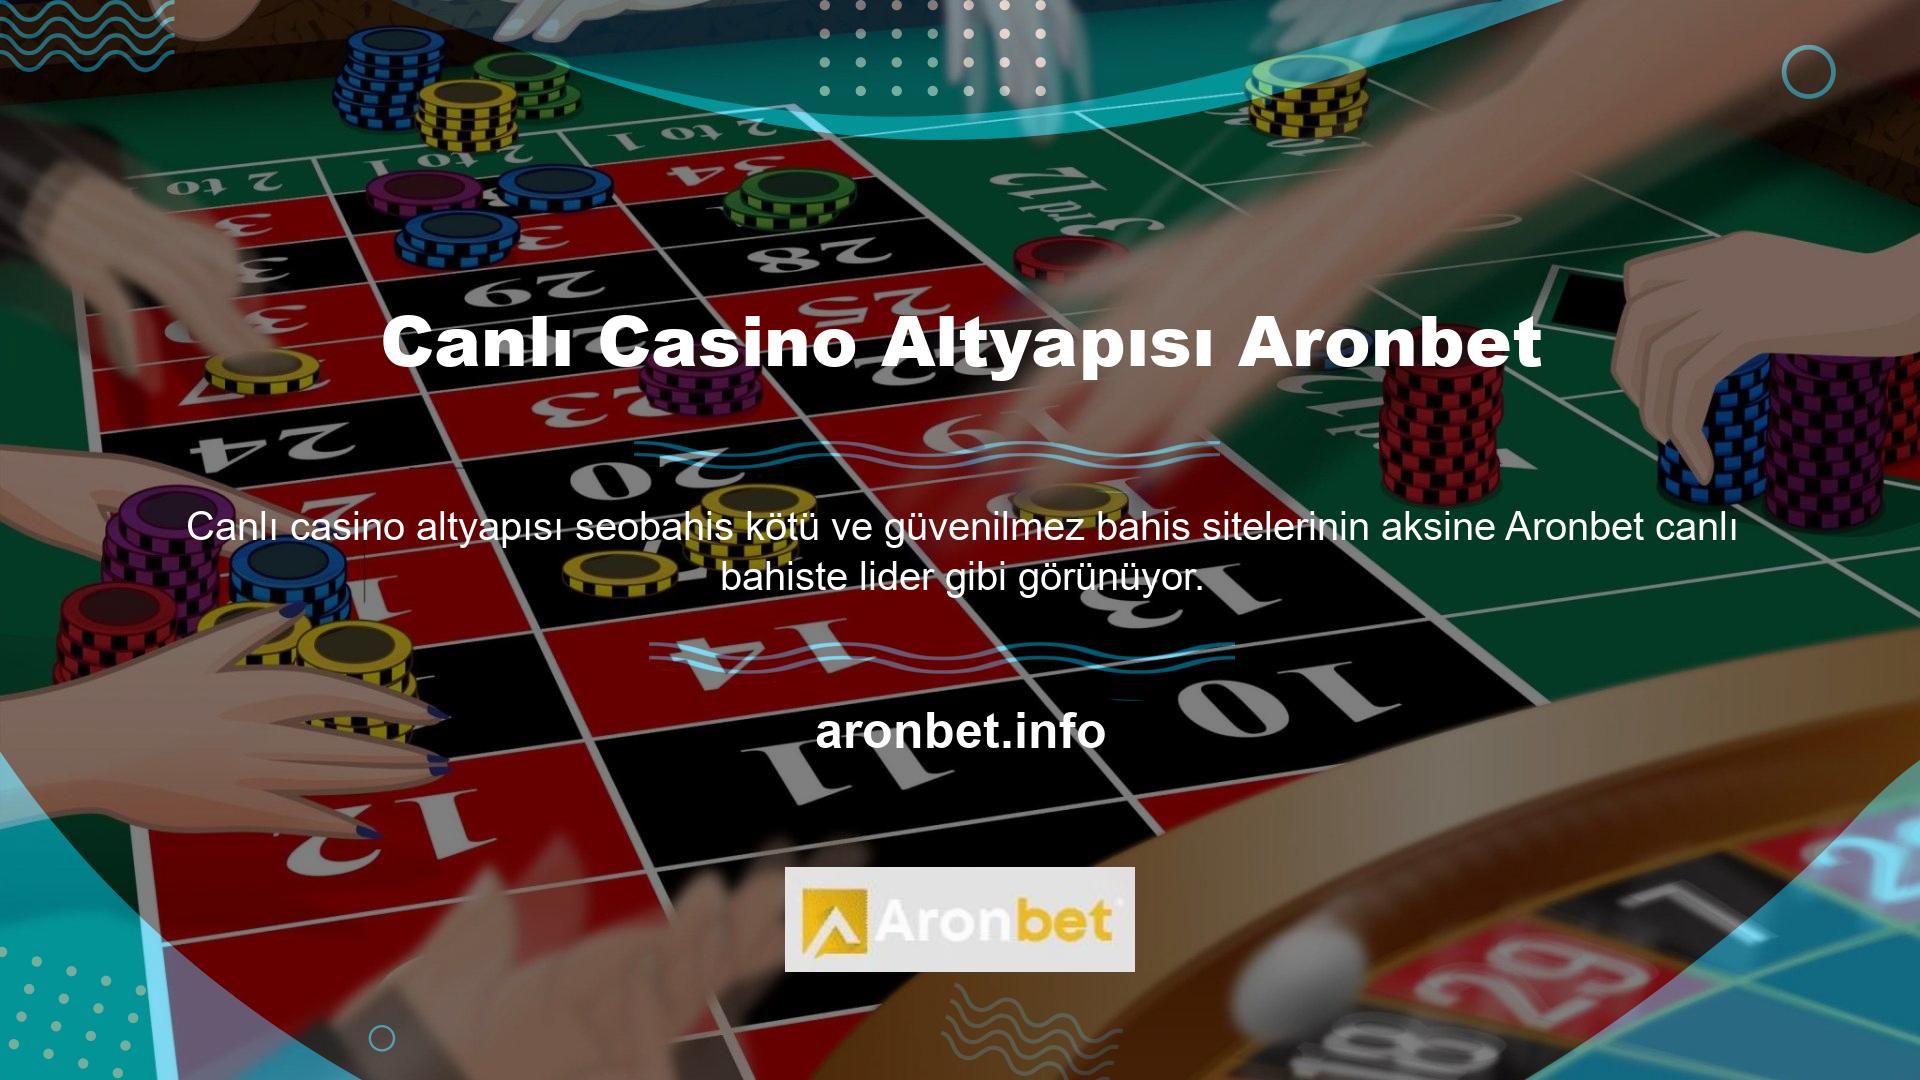 Sebebi ise canlı bahis şirketi Aronbet canlı casino altyapısı alanında en güvenilir ve kaliteli altyapı sağlayıcısı ile ortak anlaşma imzalamış olmasıdır